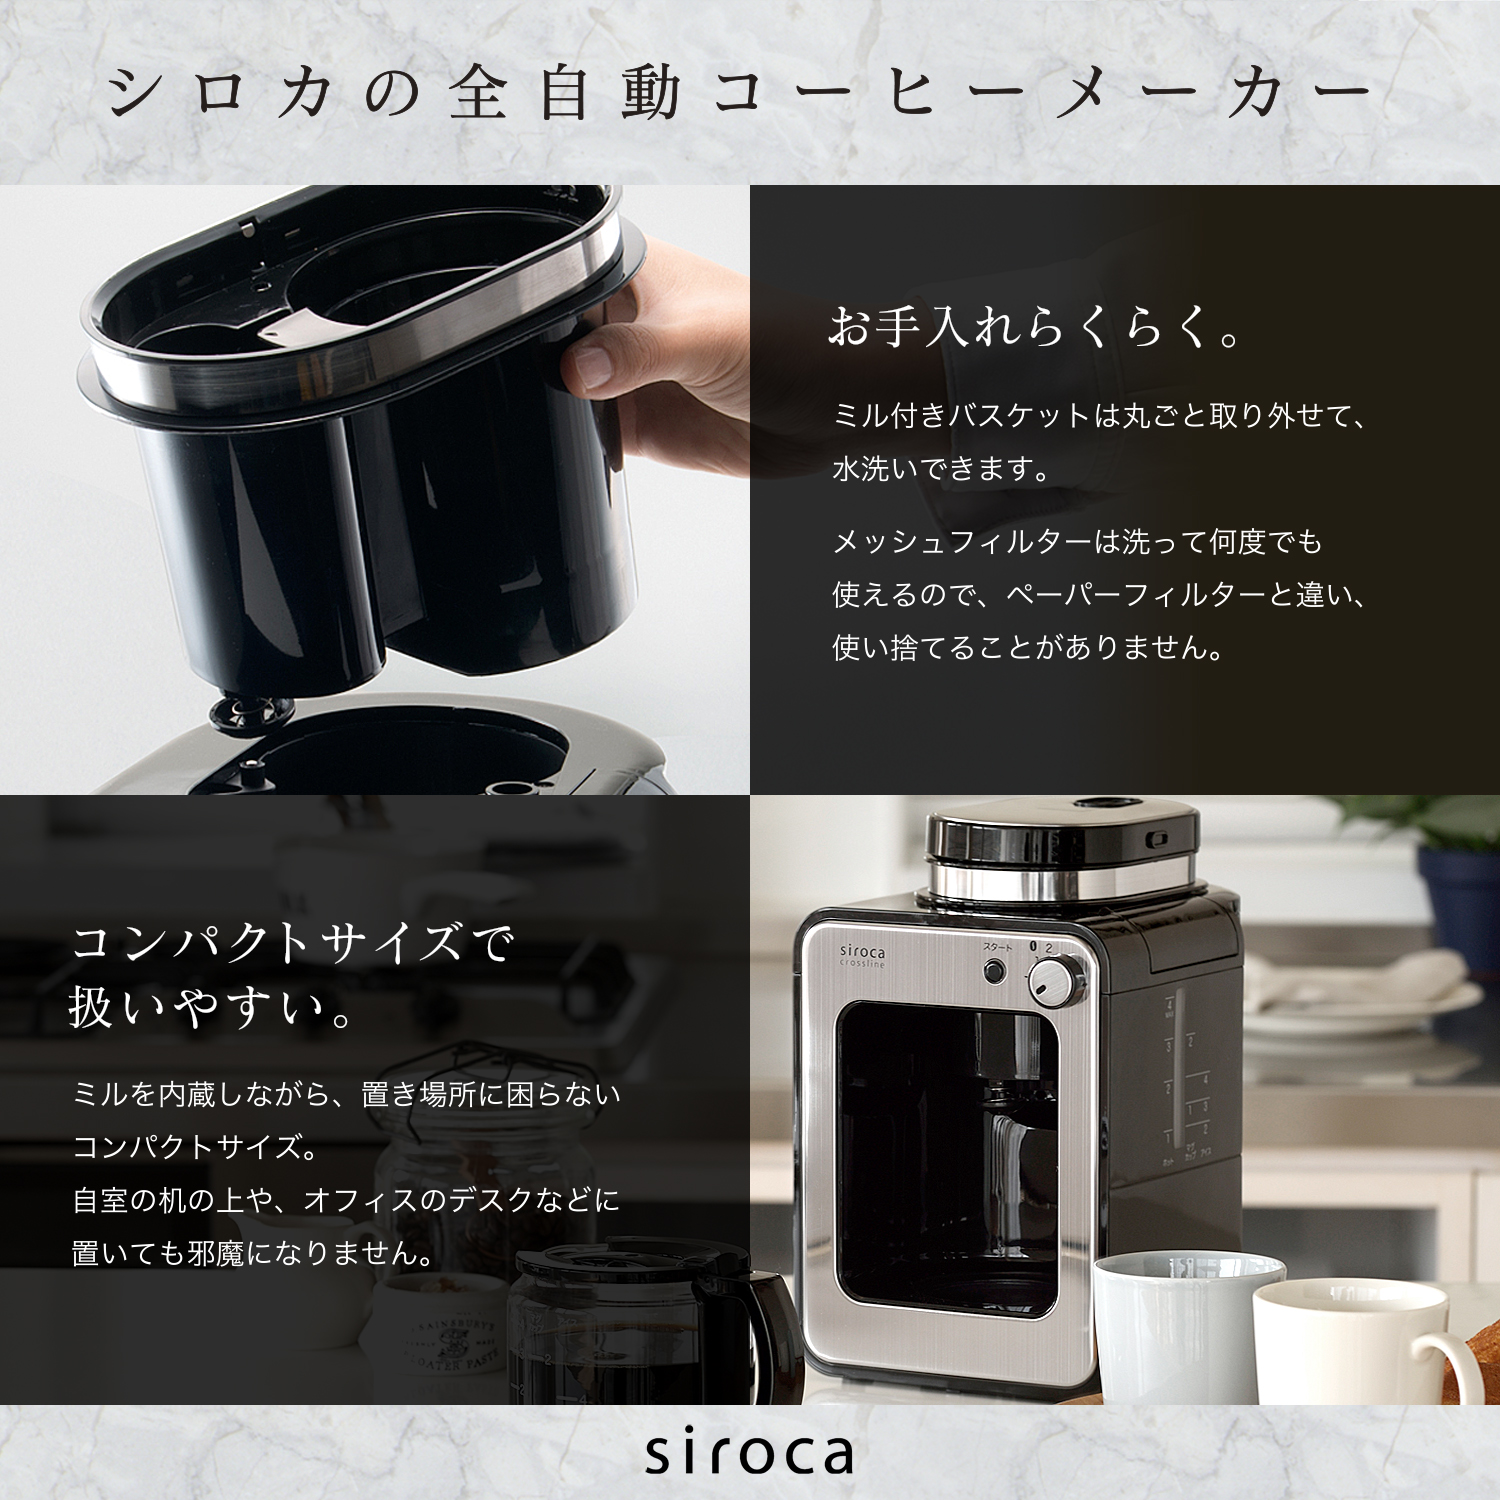 【楽天市場】【ポイントUP対象商品】【シロカ公式】siroca 全自動コーヒーメーカー SC-A211 ステンレスシルバー | コーヒー